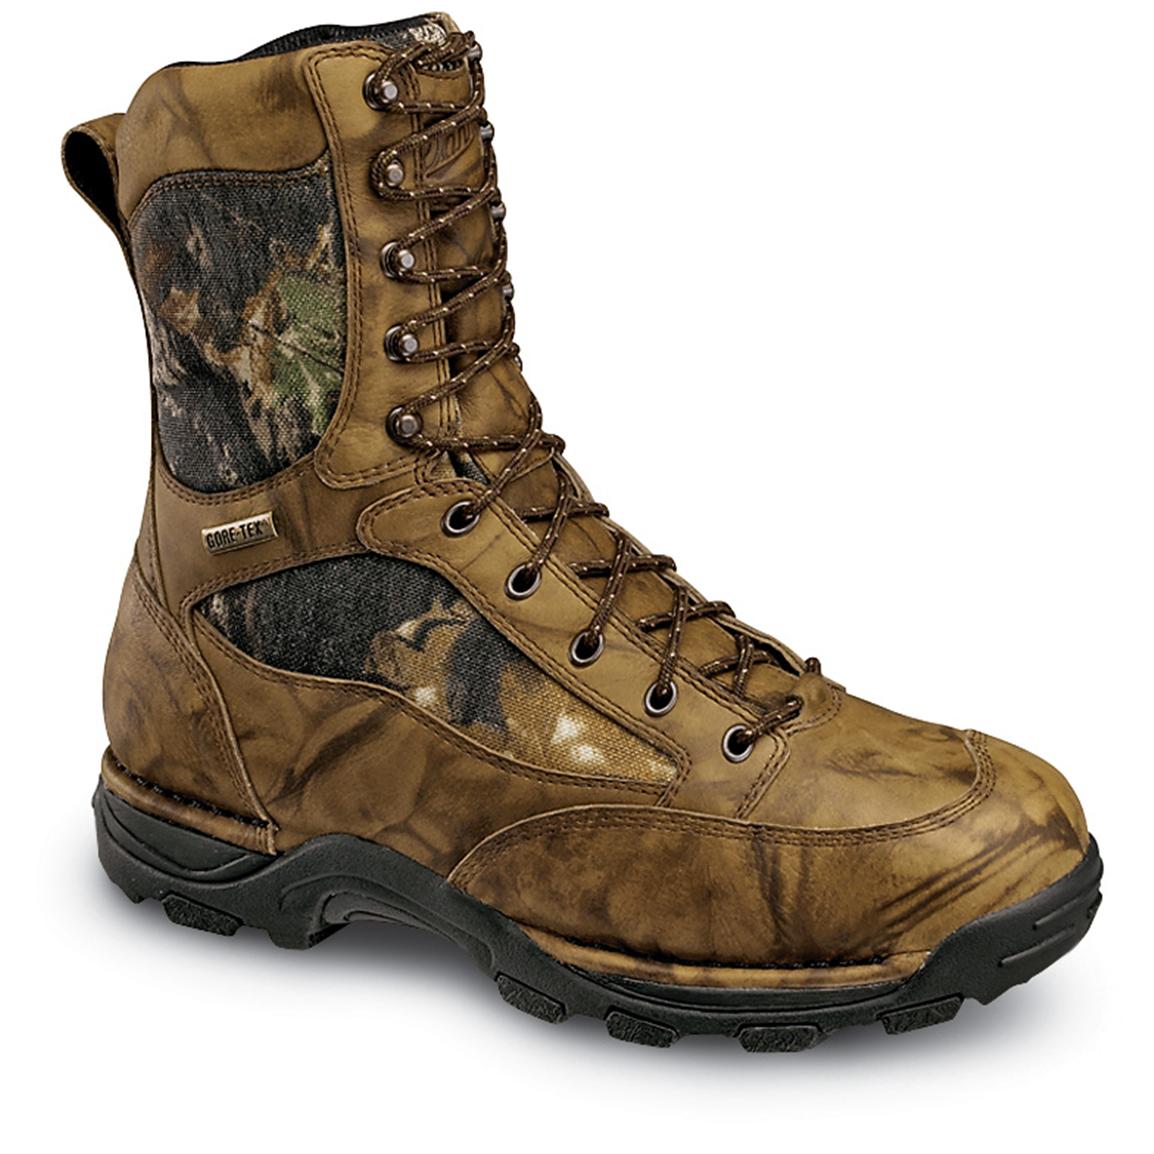 Men's DannerÂ® Pronghorn 1,000 gram Thinsulateâ¢ Ultra Insulation Boots with GORE - TEX,Â® Brown 